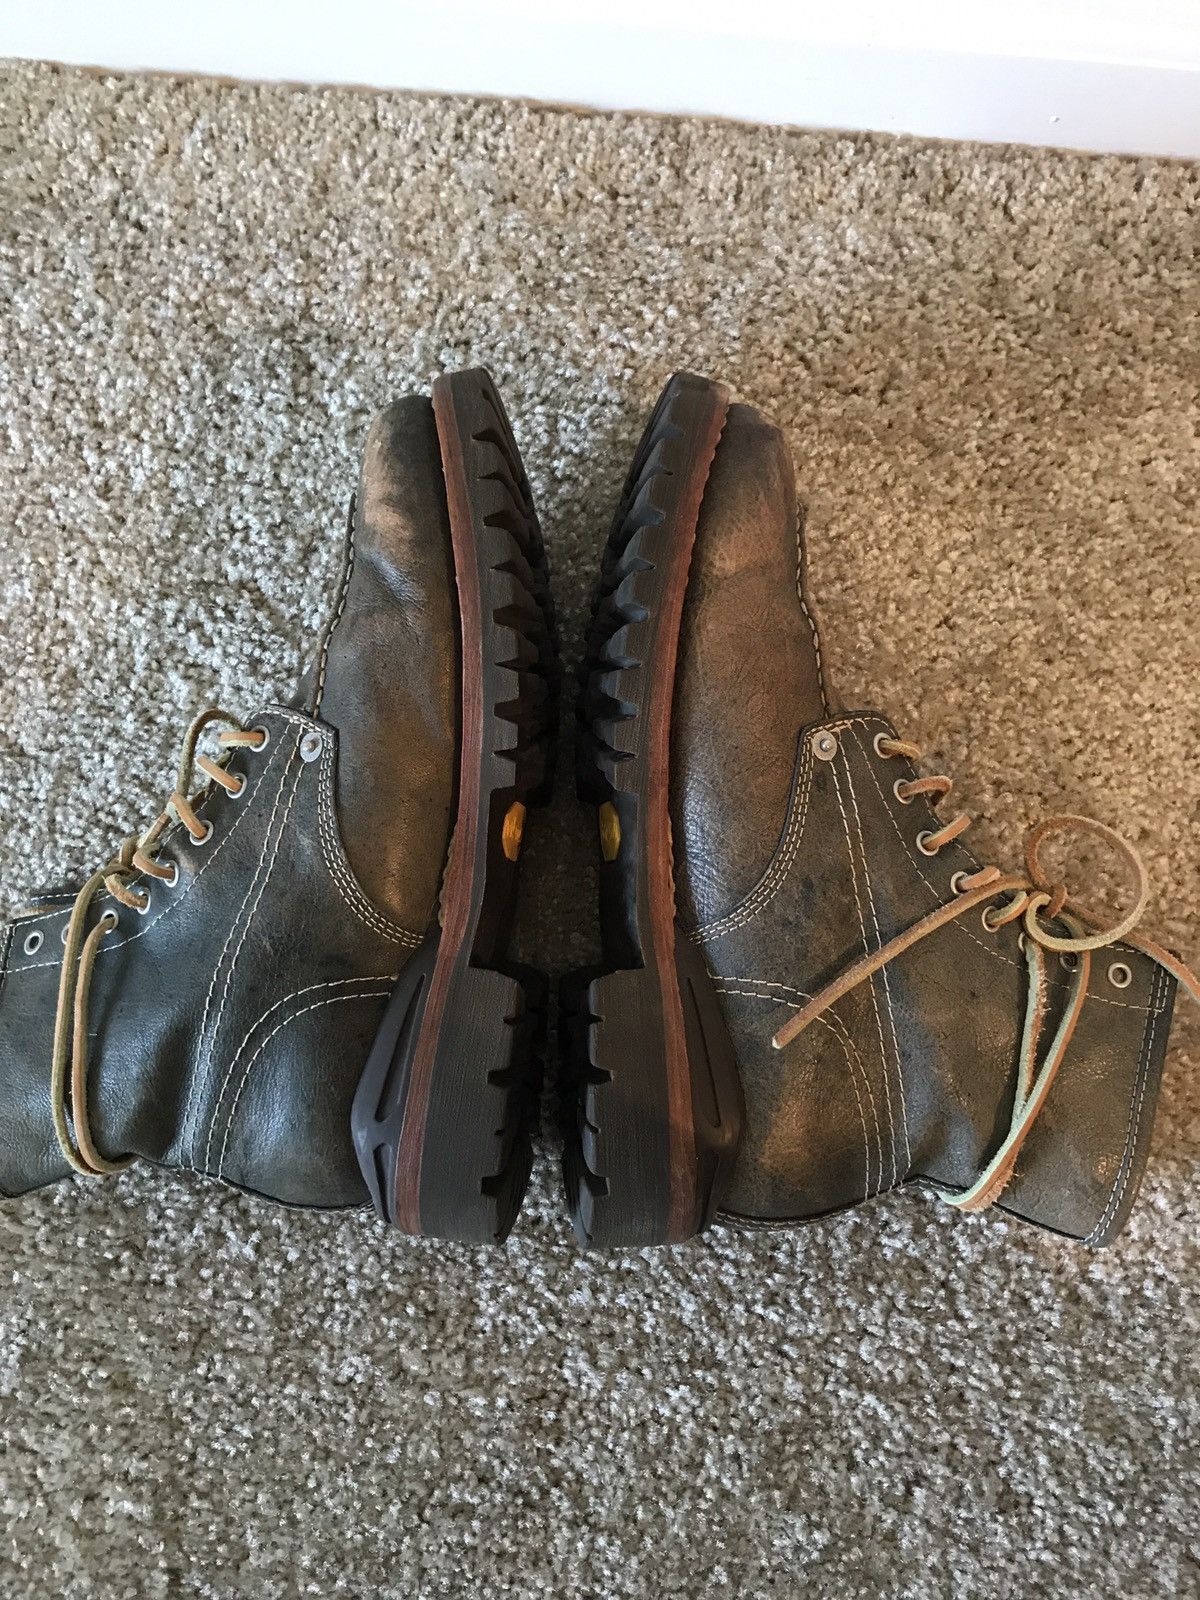 Visvim Visvim Vanguard Boots Folk Gray Size US 9 / EU 42 - 8 Thumbnail